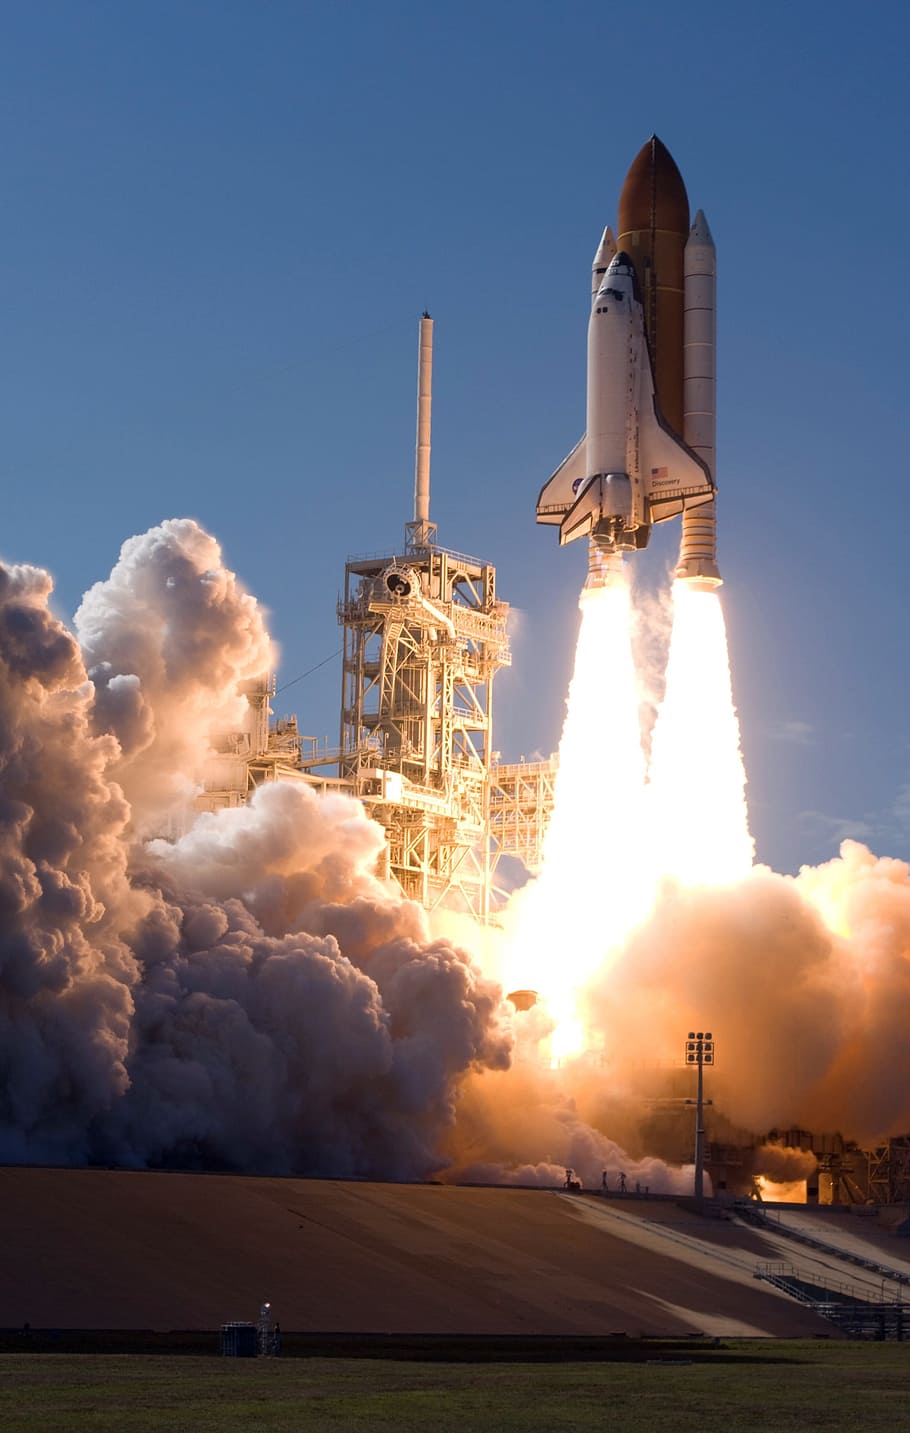 nave espacial branca, lançamento de foguete, decolar, NASA, foguete, viagem espacial, dirigir, impulso, aceleração, gravidade